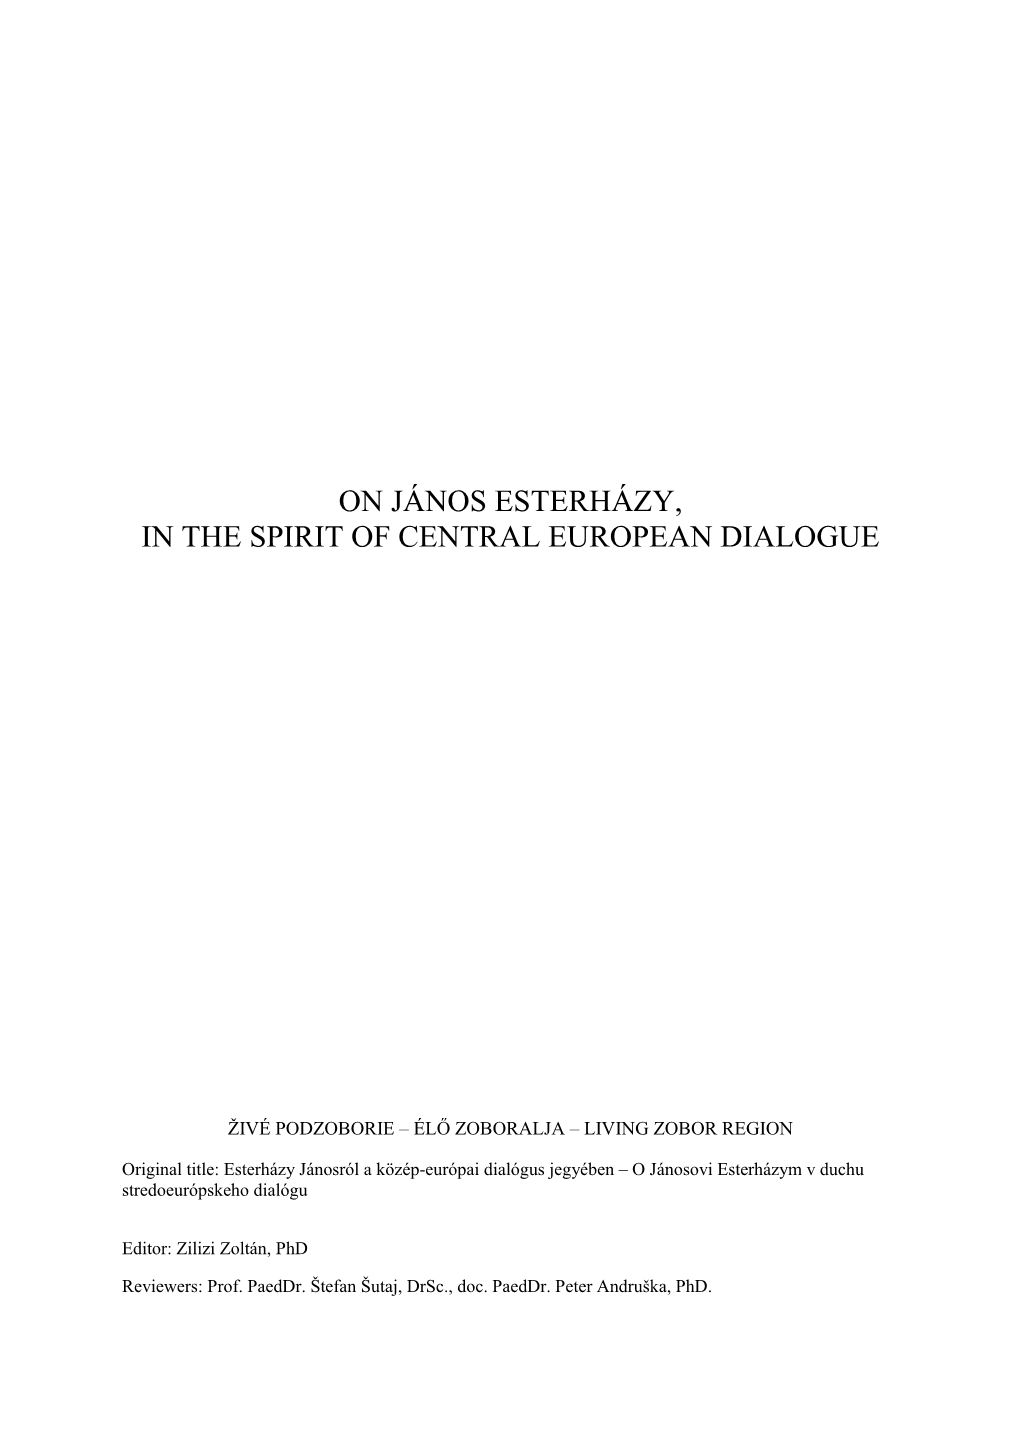 On János Esterházy, in the Spirit of Central European Dialogue